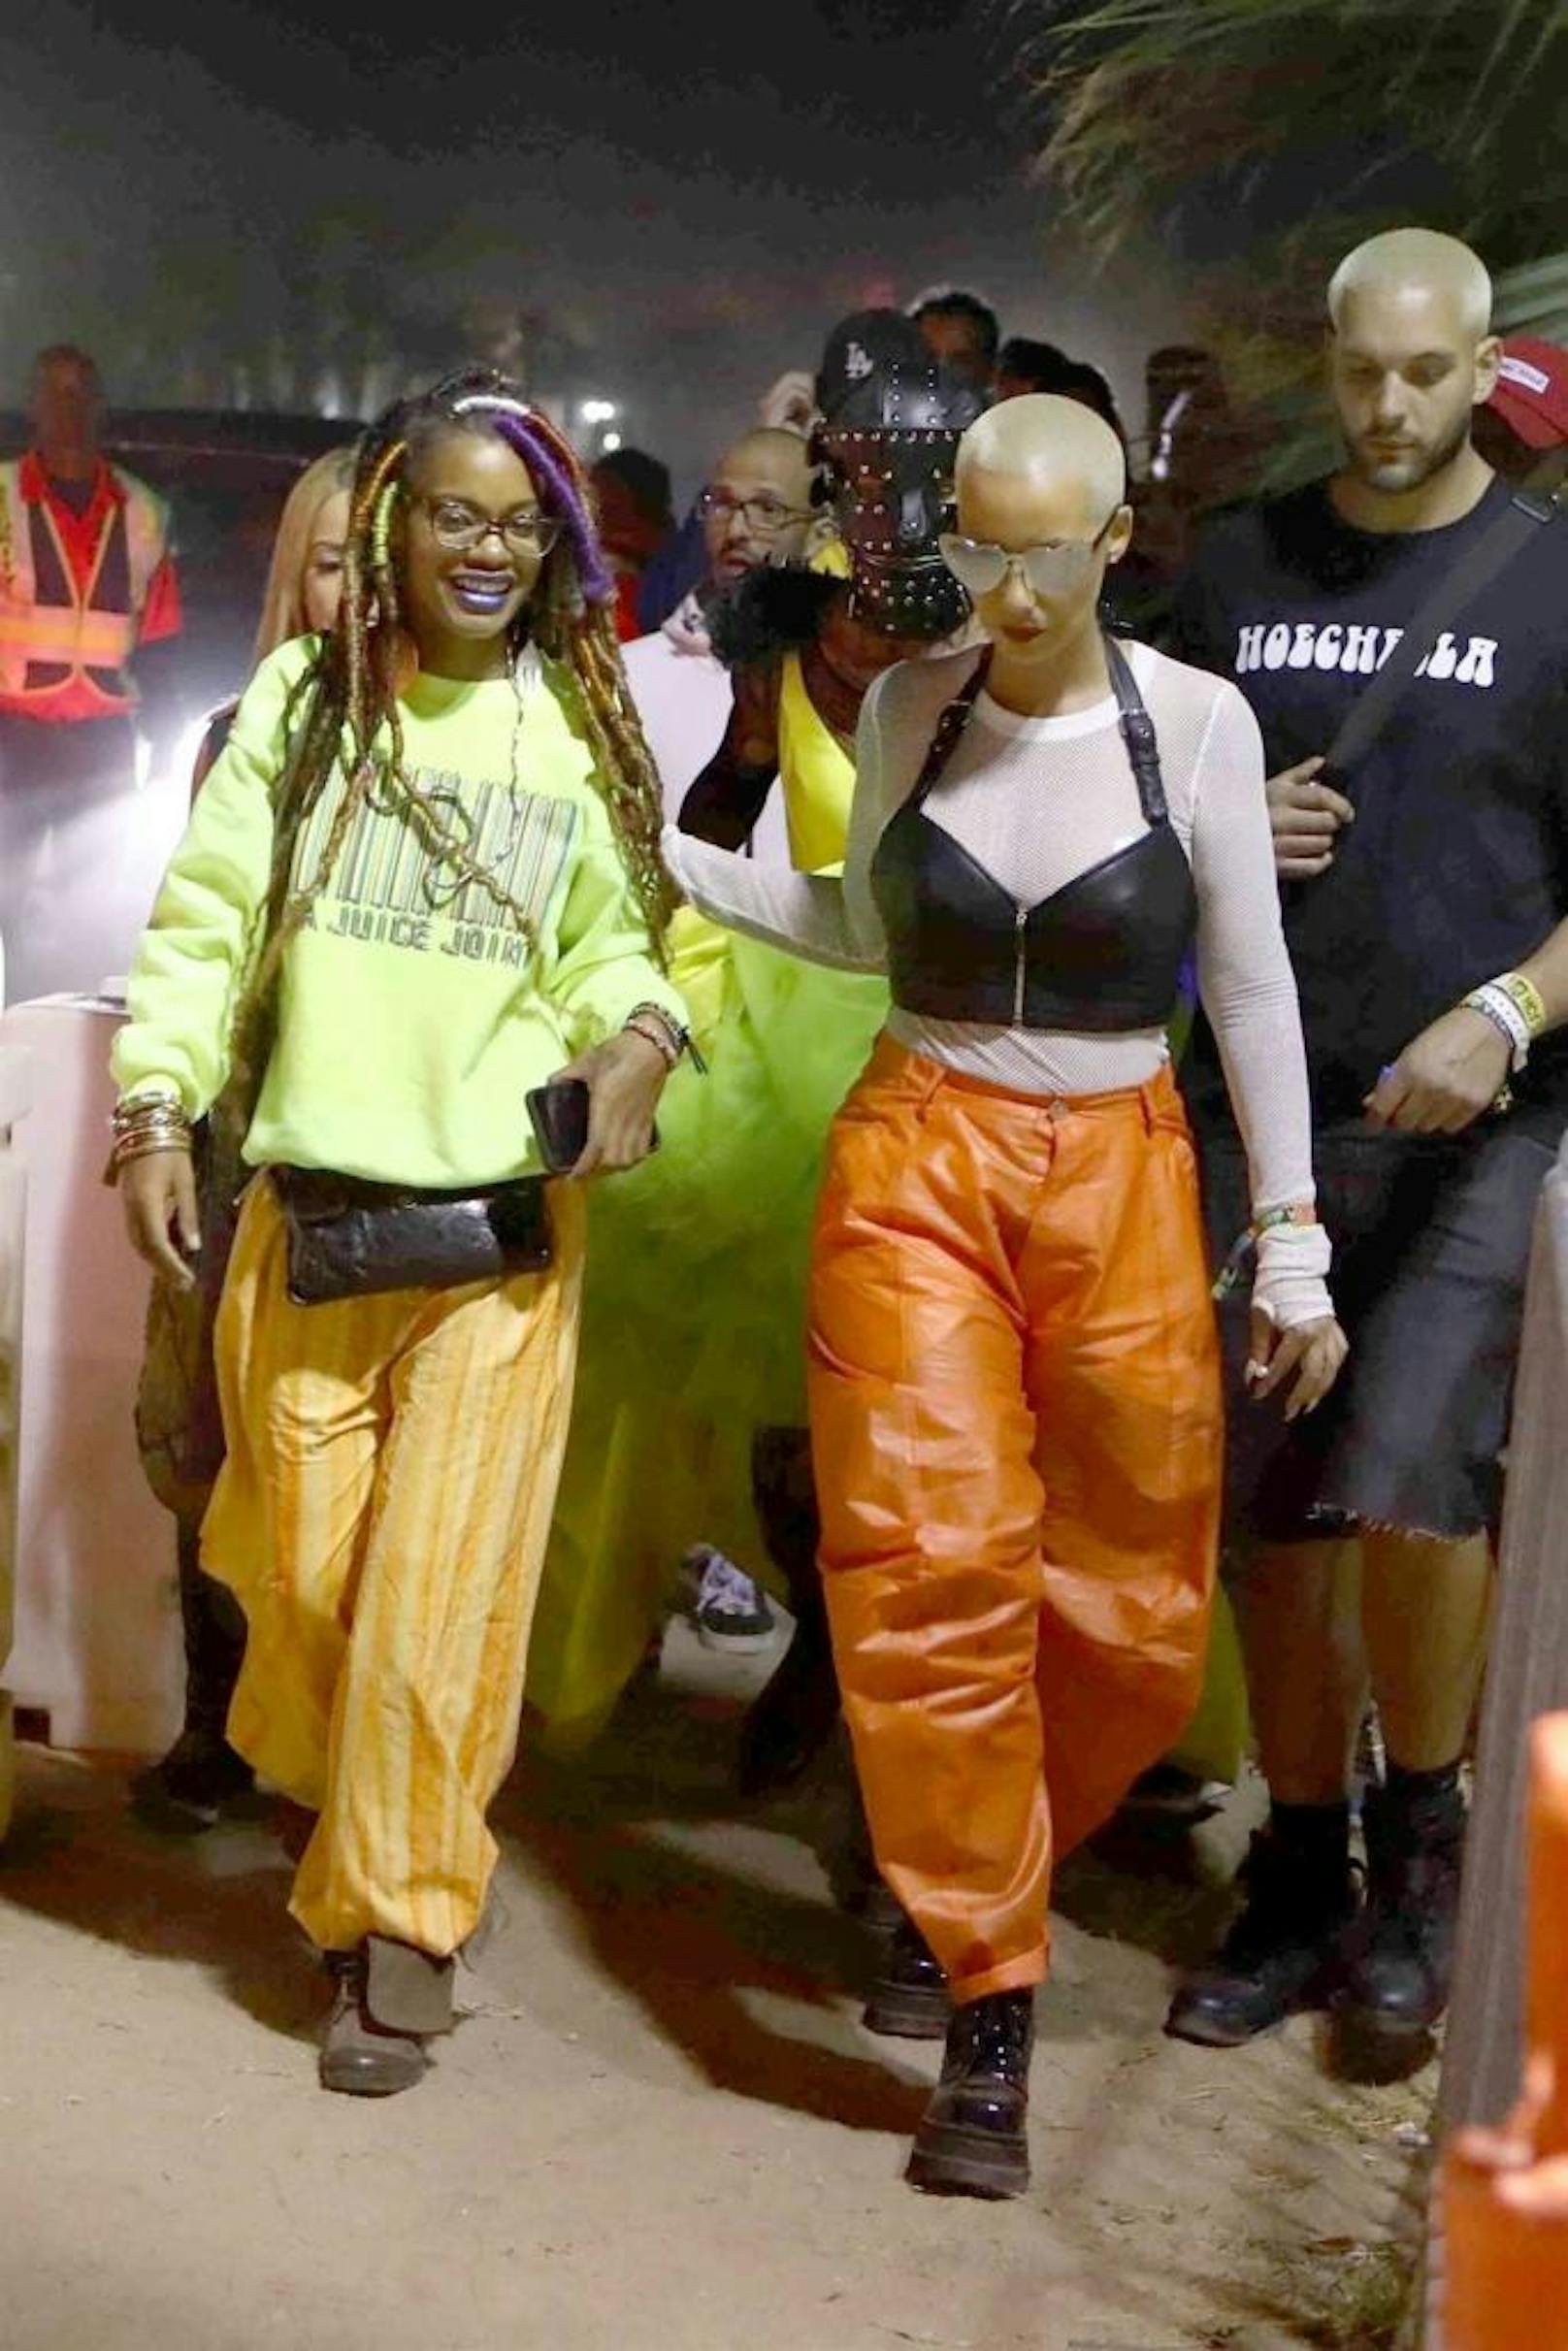 Frau fürs Grobe: Amber Rose tauschte ihr Neon-Outfit gegen Hosen, die aussehen als hätte sie sie einem MA 48er ausgezogen